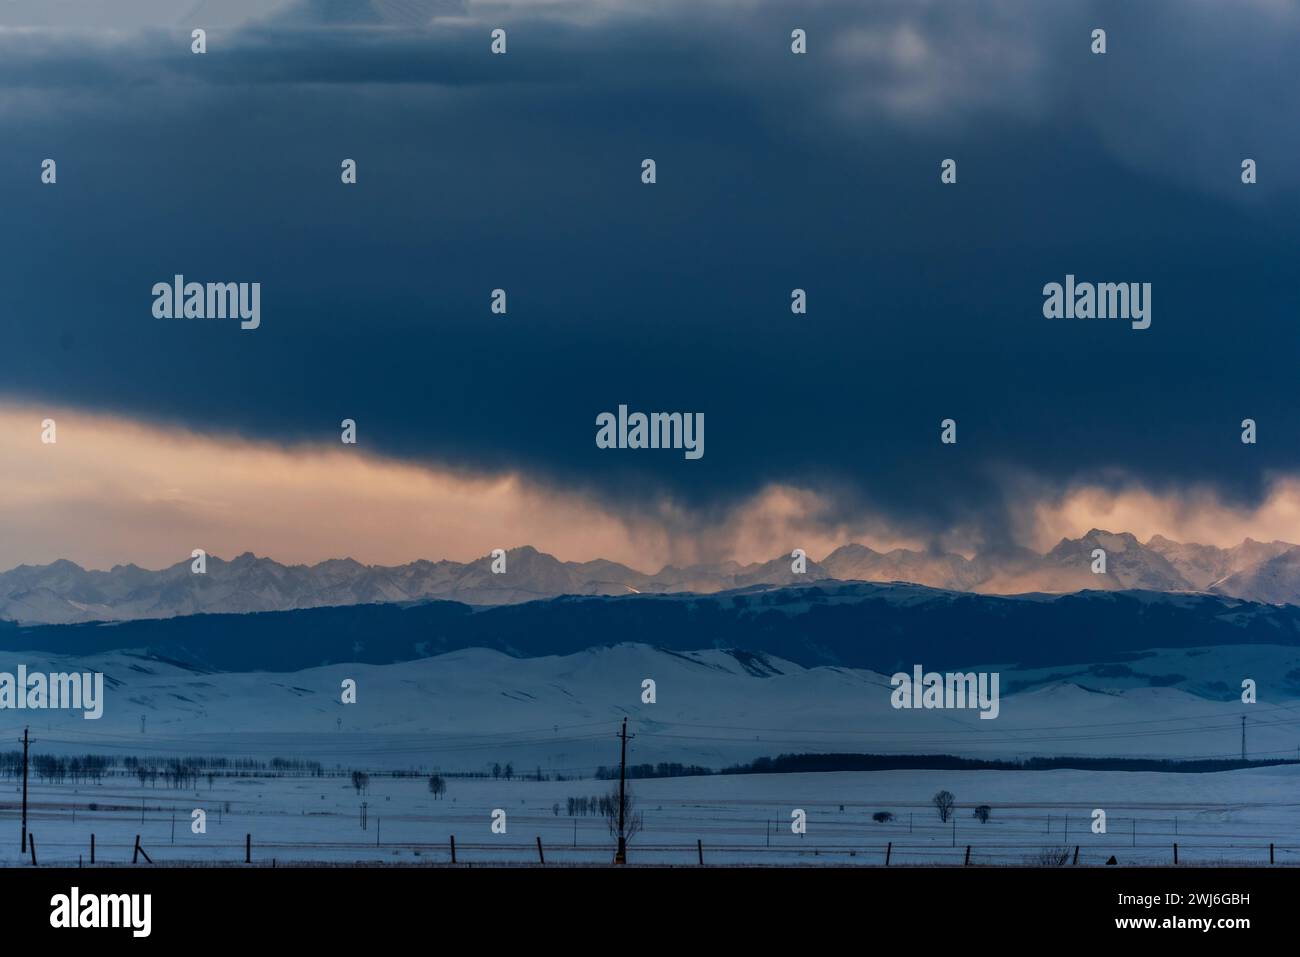 YILI, CHINA - 13. FEBRUAR 2024 - Blick auf die Tianshan-Berge auf der anderen Seite des Plateaus am Vorabend des Sonnenaufgangs in Yili, Provinz Xinjiang, CH Stockfoto